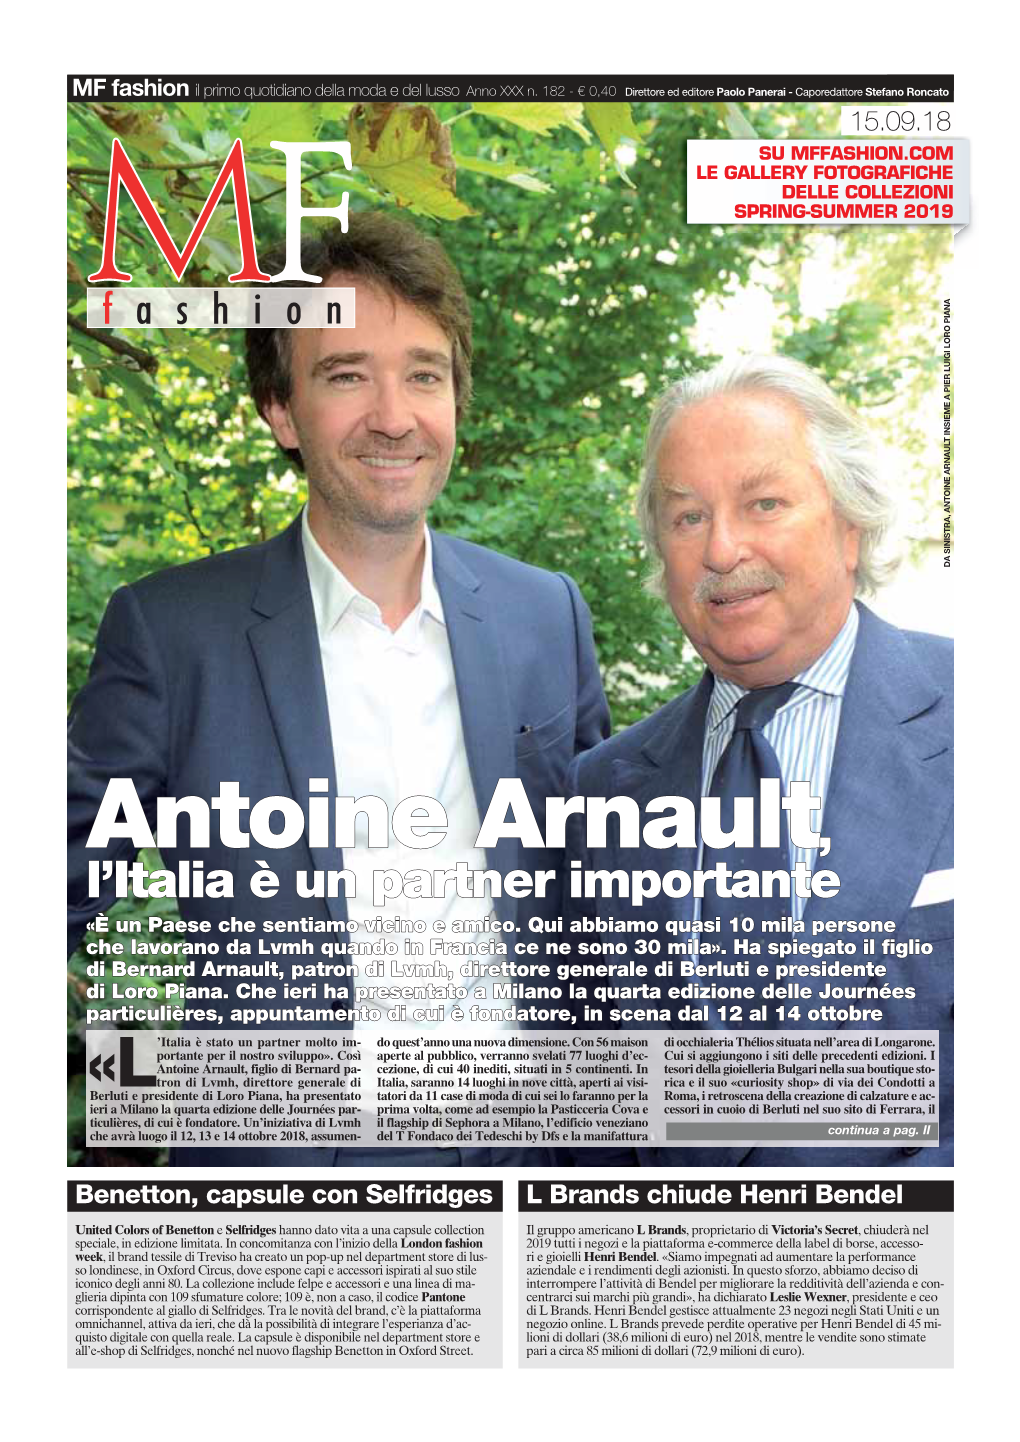 Antoine Arnault, Figlio Di Bernard Pa- Cezione, Di Cui 40 Inediti, Situati in 5 Continenti